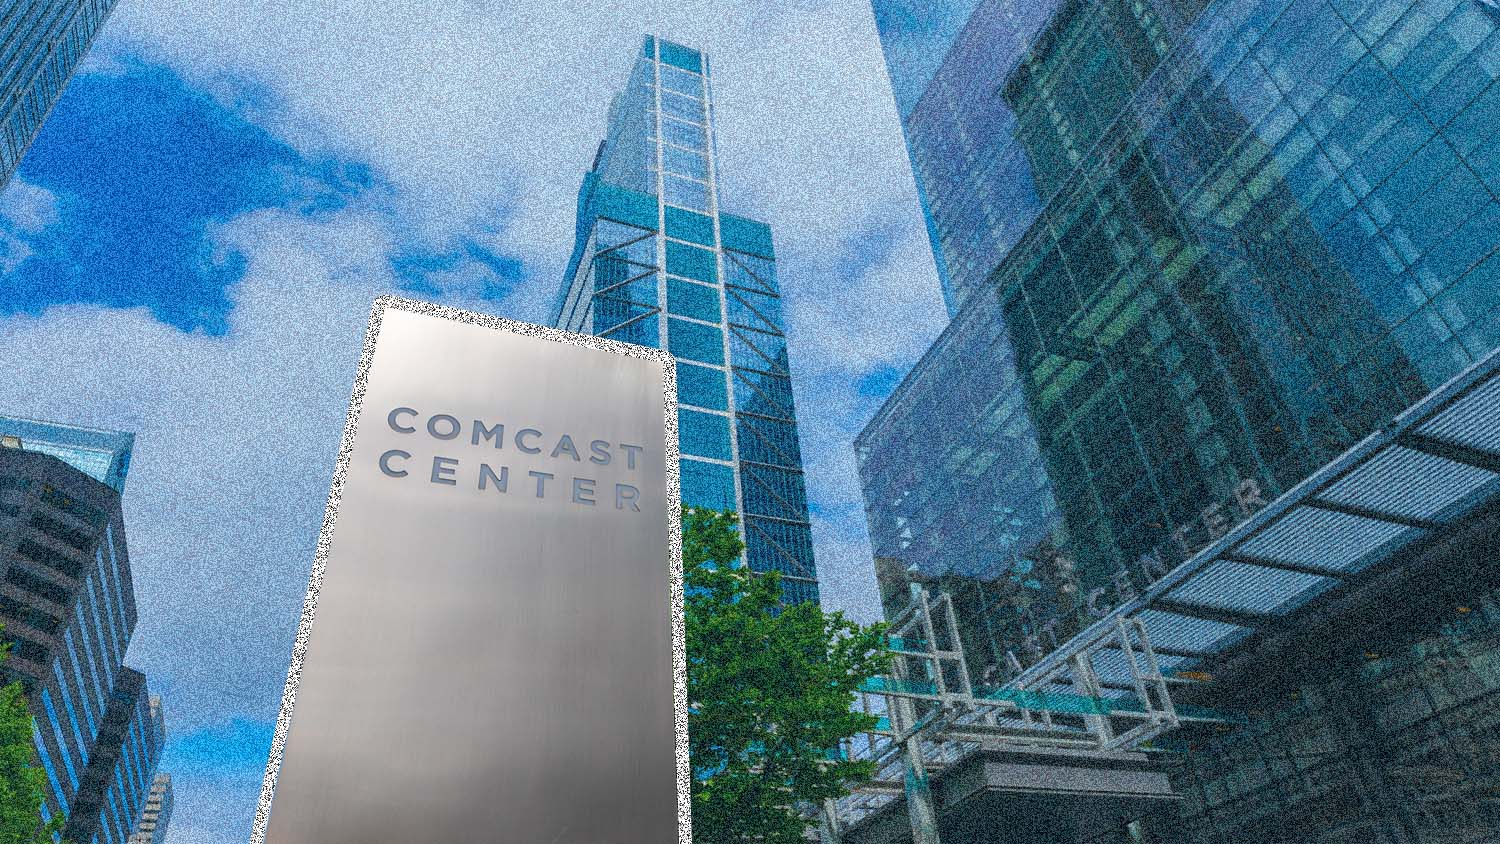 Comcast Center sign